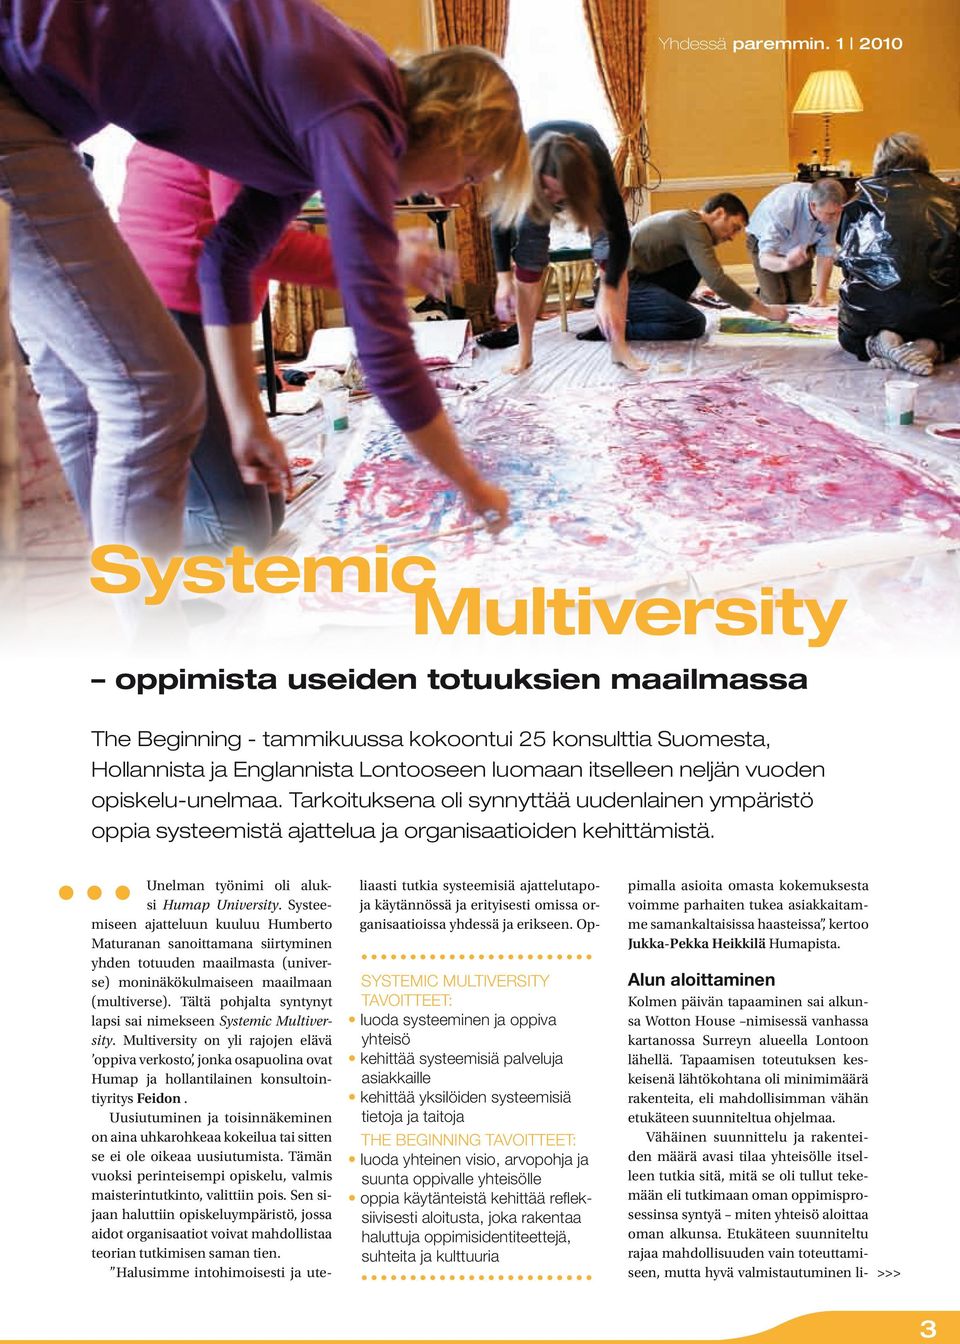 Systemic Multiversity tavoitteet: luoda systeeminen ja oppiva yhteisö kehittää systeemisiä palveluja asiakkaille kehittää yksilöiden systeemisiä tietoja ja taitoja The Beginning tavoitteet: luoda